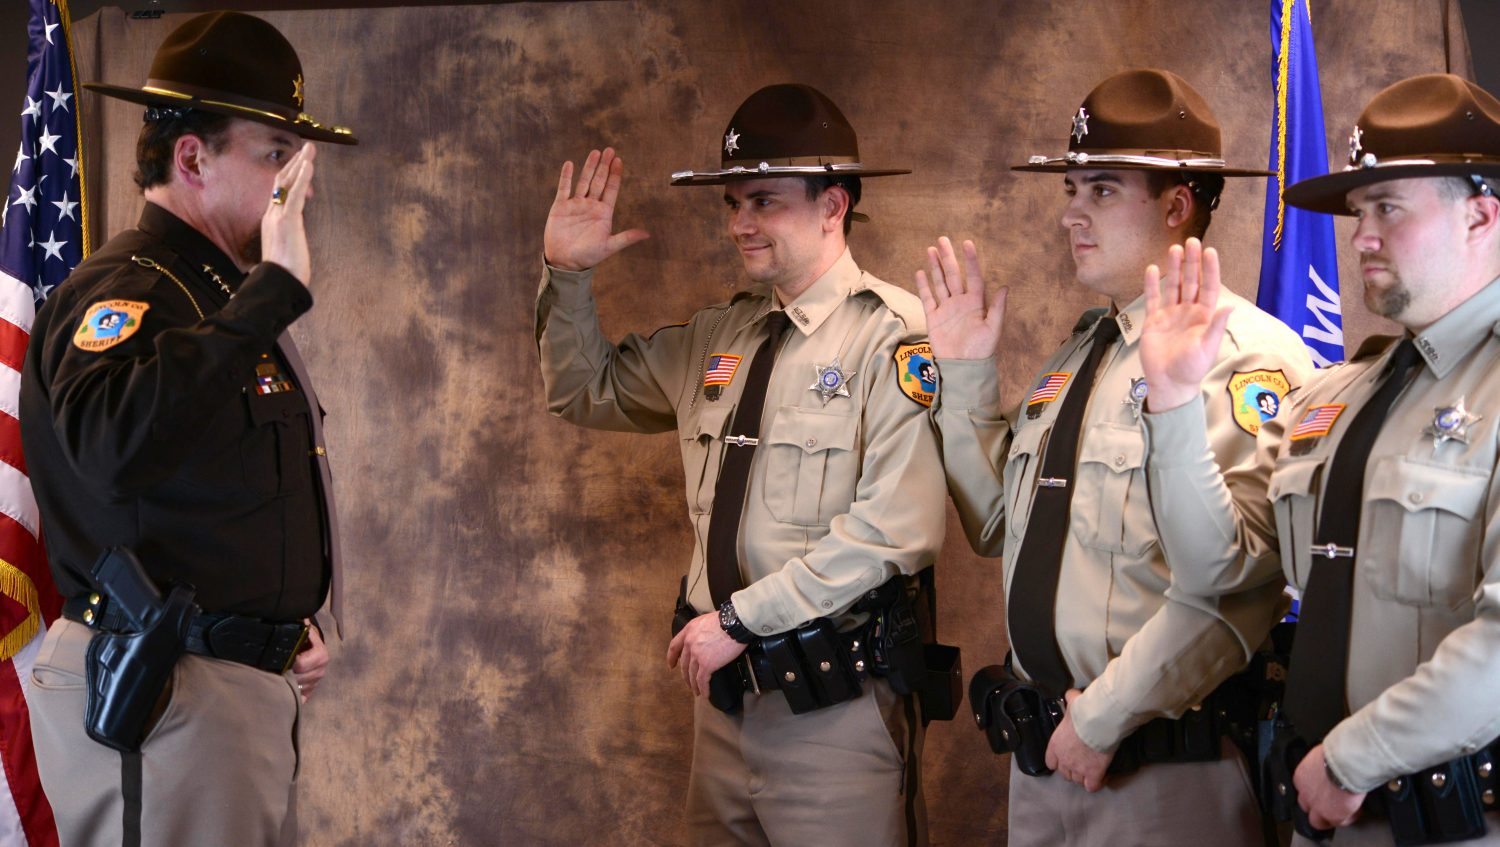 Sheriff swears in deputies